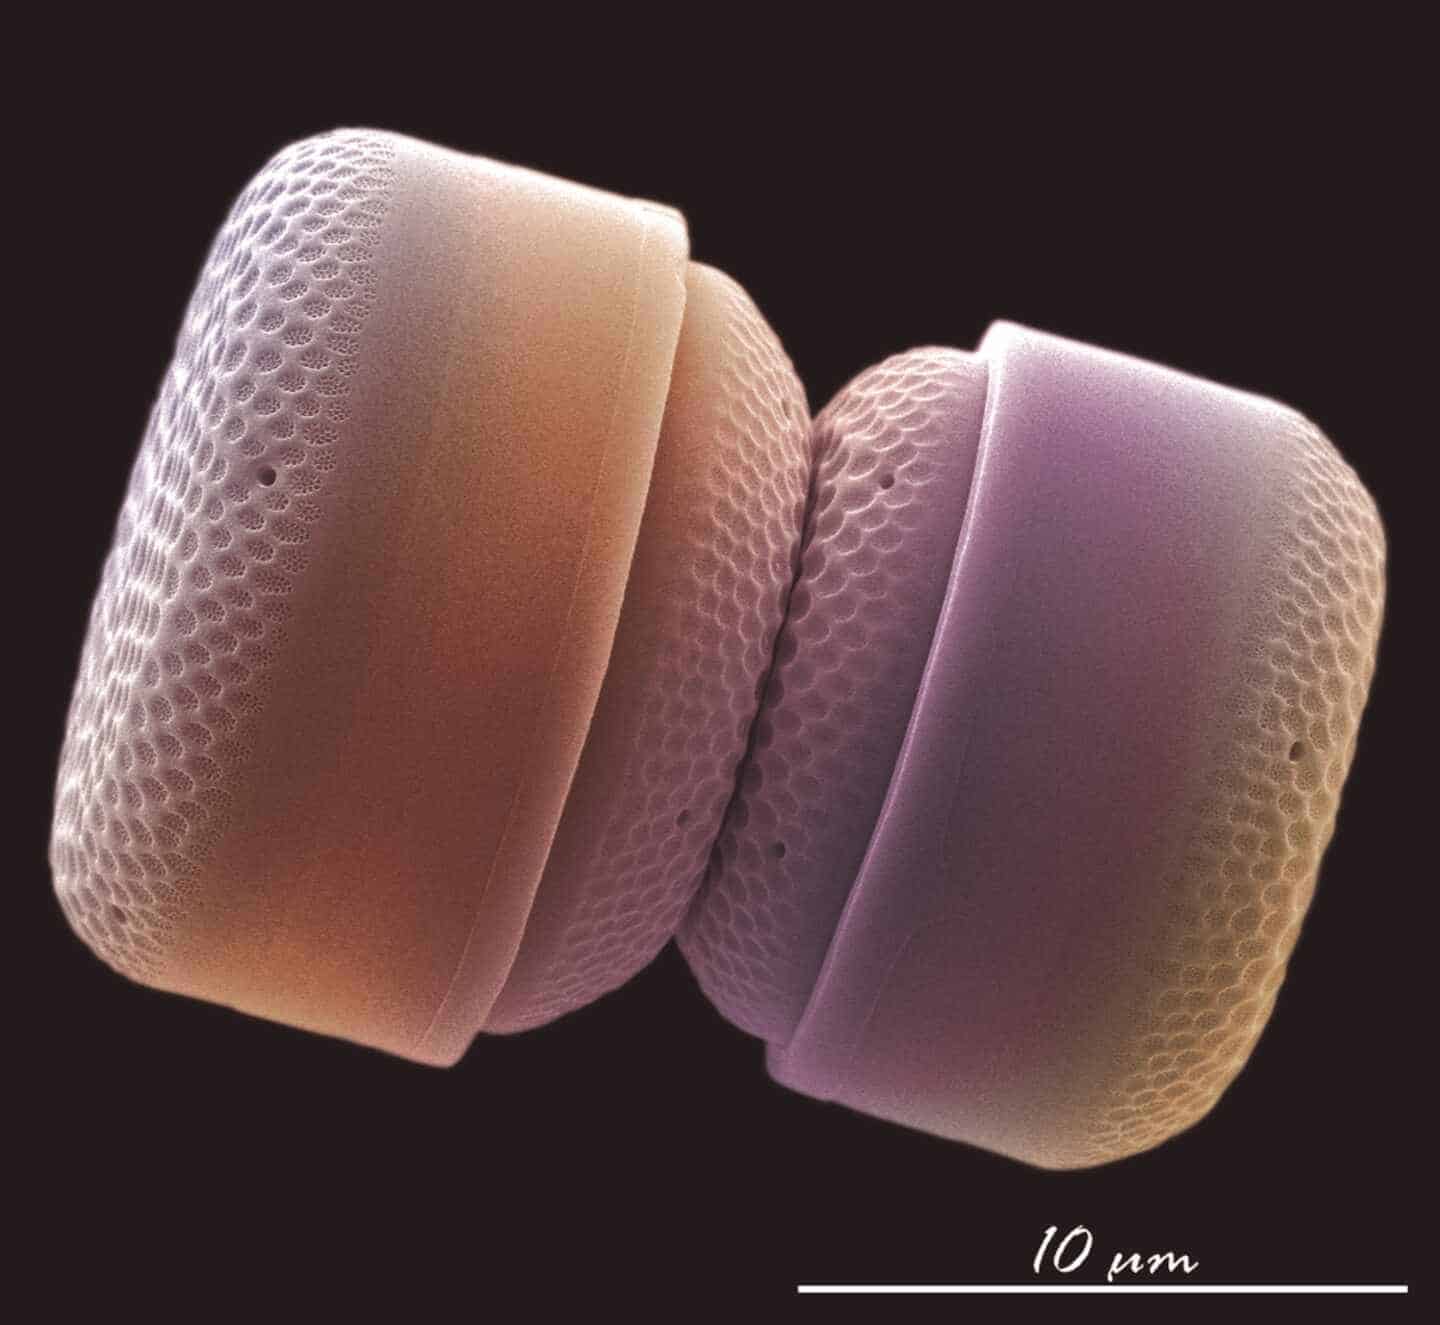 Las mejores fotos de ciencia: el sexo de los crustáceos, caballitos de mar y nanoplancton